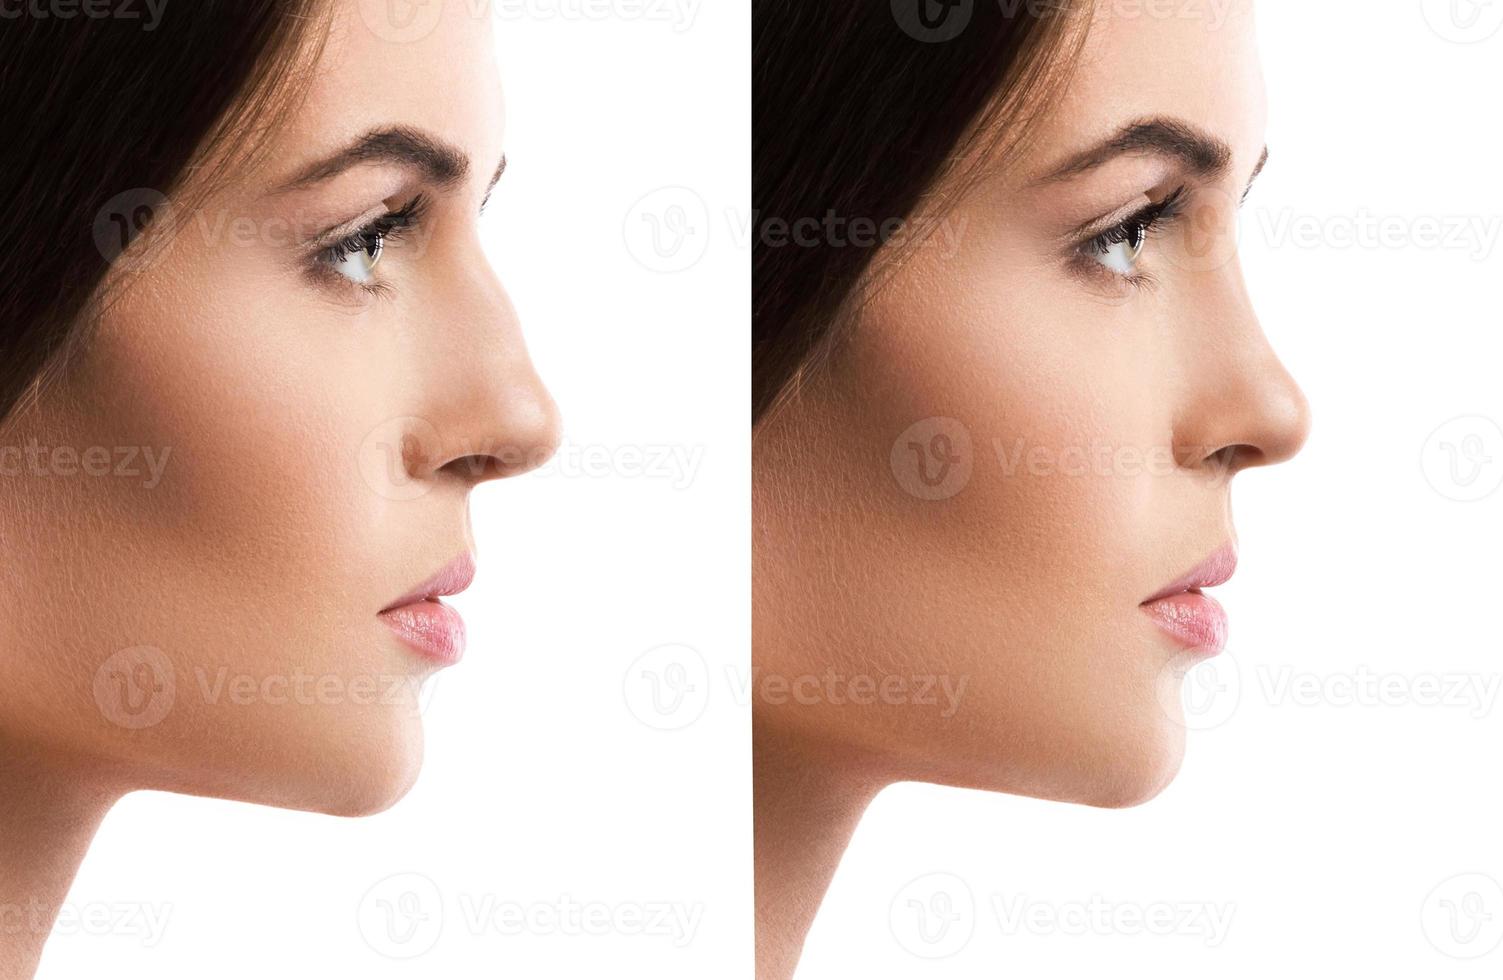 comparación rostro femenino después de la rinoplastia sobre fondo blanco foto